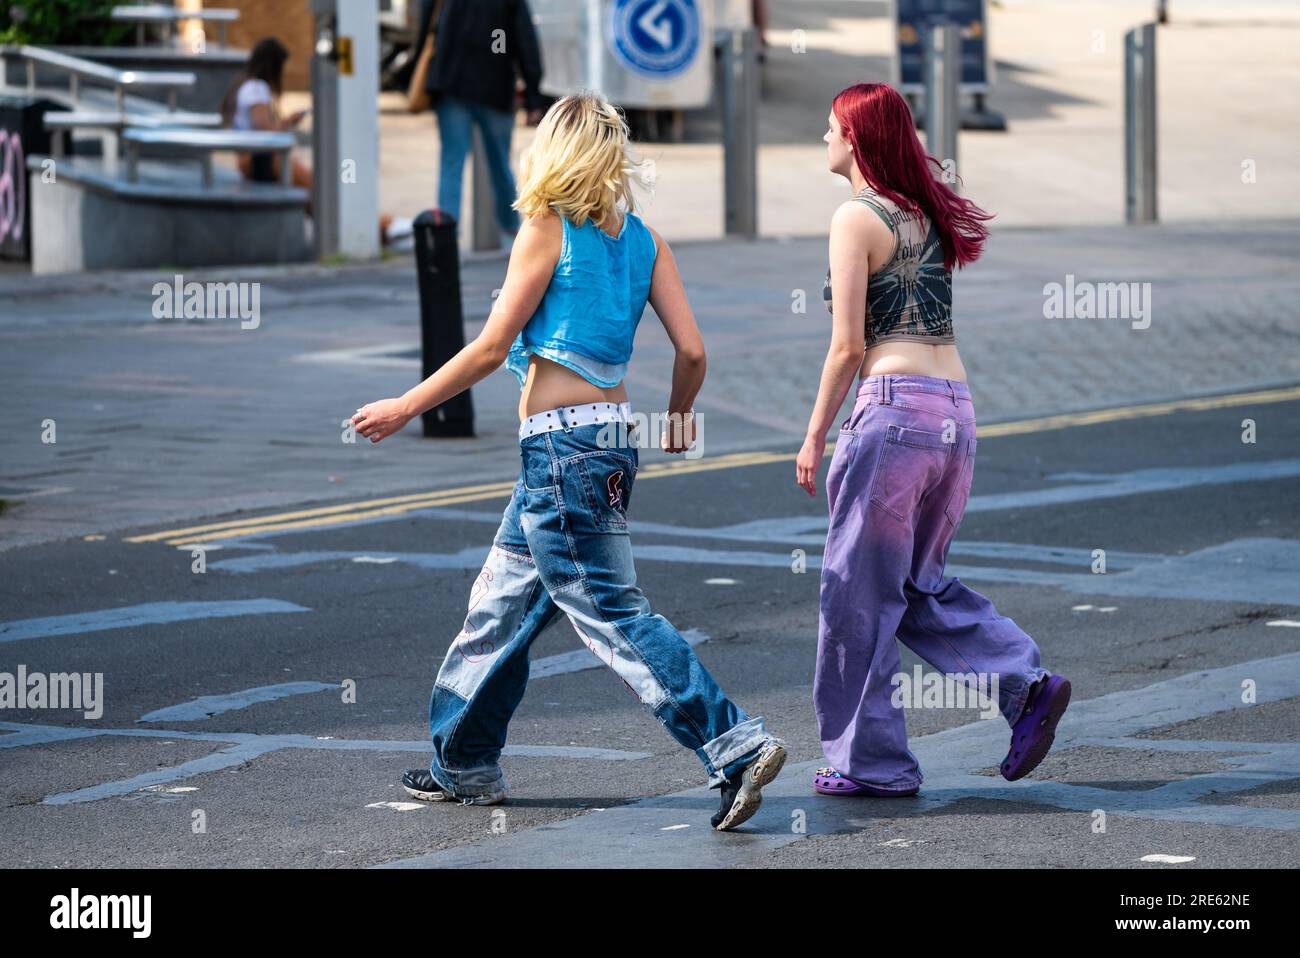 Zwei junge, schlanke Frauen, Mädchen oder Teenager, die in Jeans gekleidet sind, über eine Straße gehen und in Summer, Großbritannien, einkaufen gehen. Freunde in Geschäften. Stockfoto